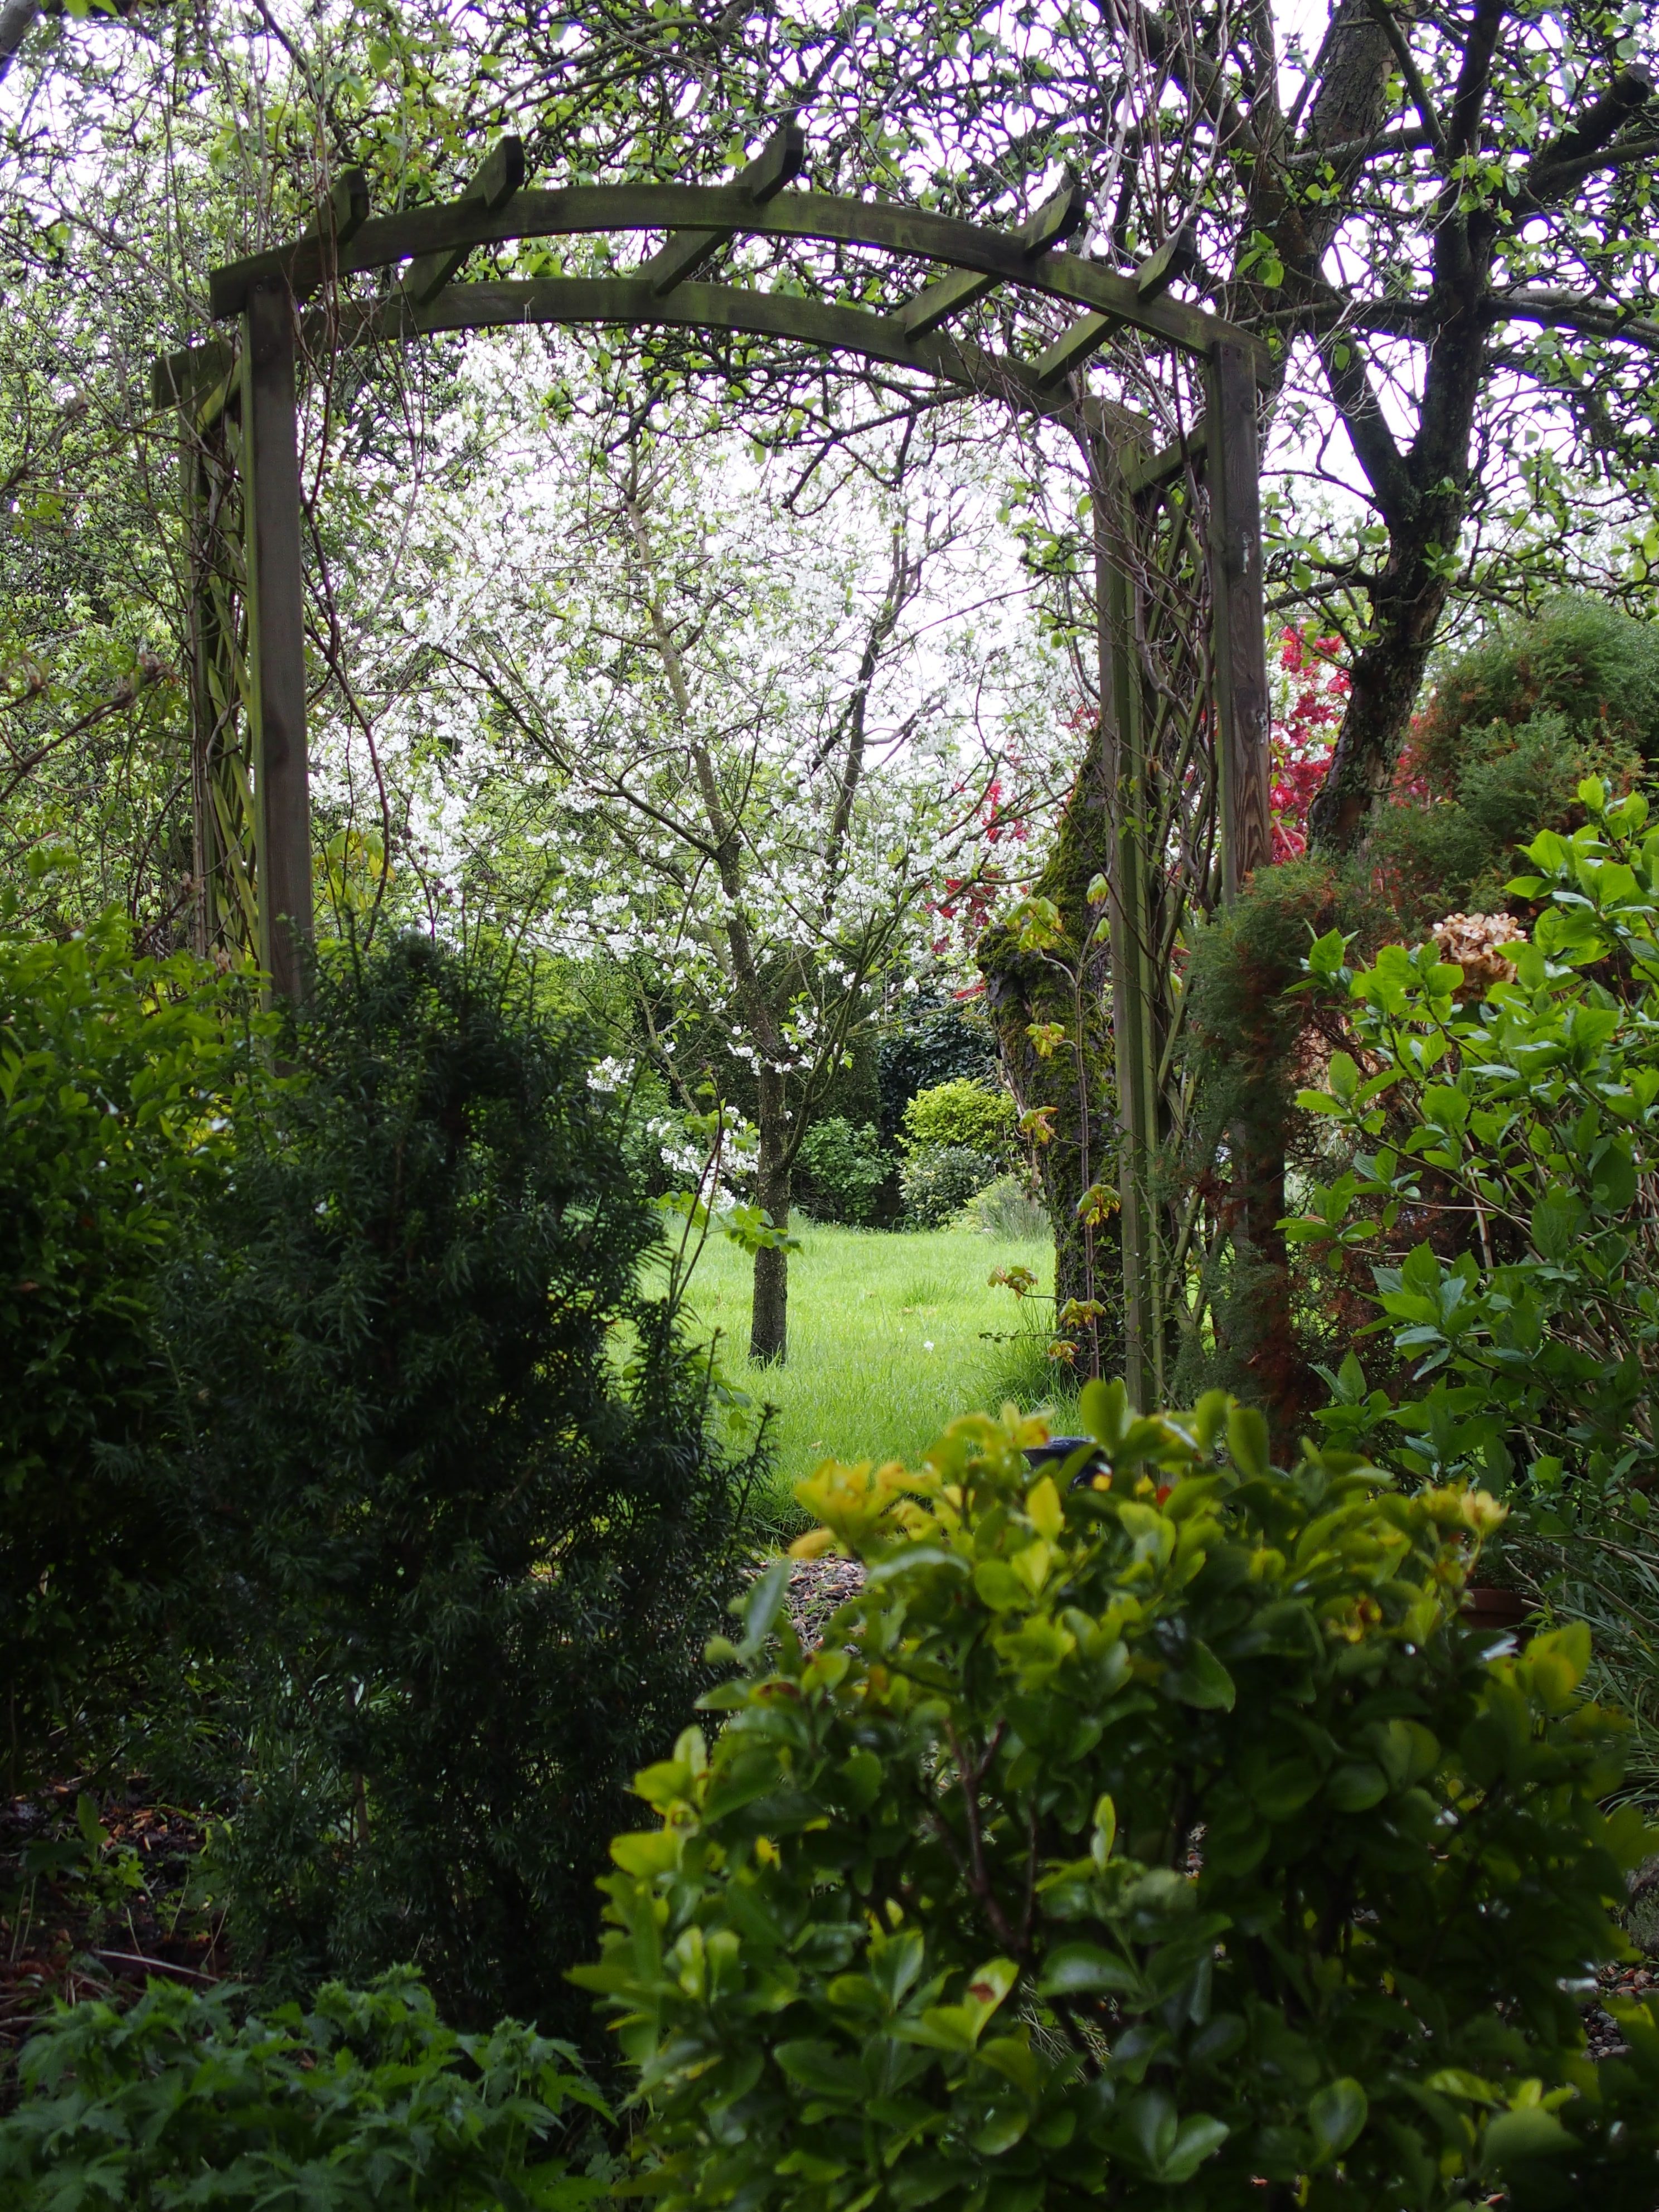 Garden Archway